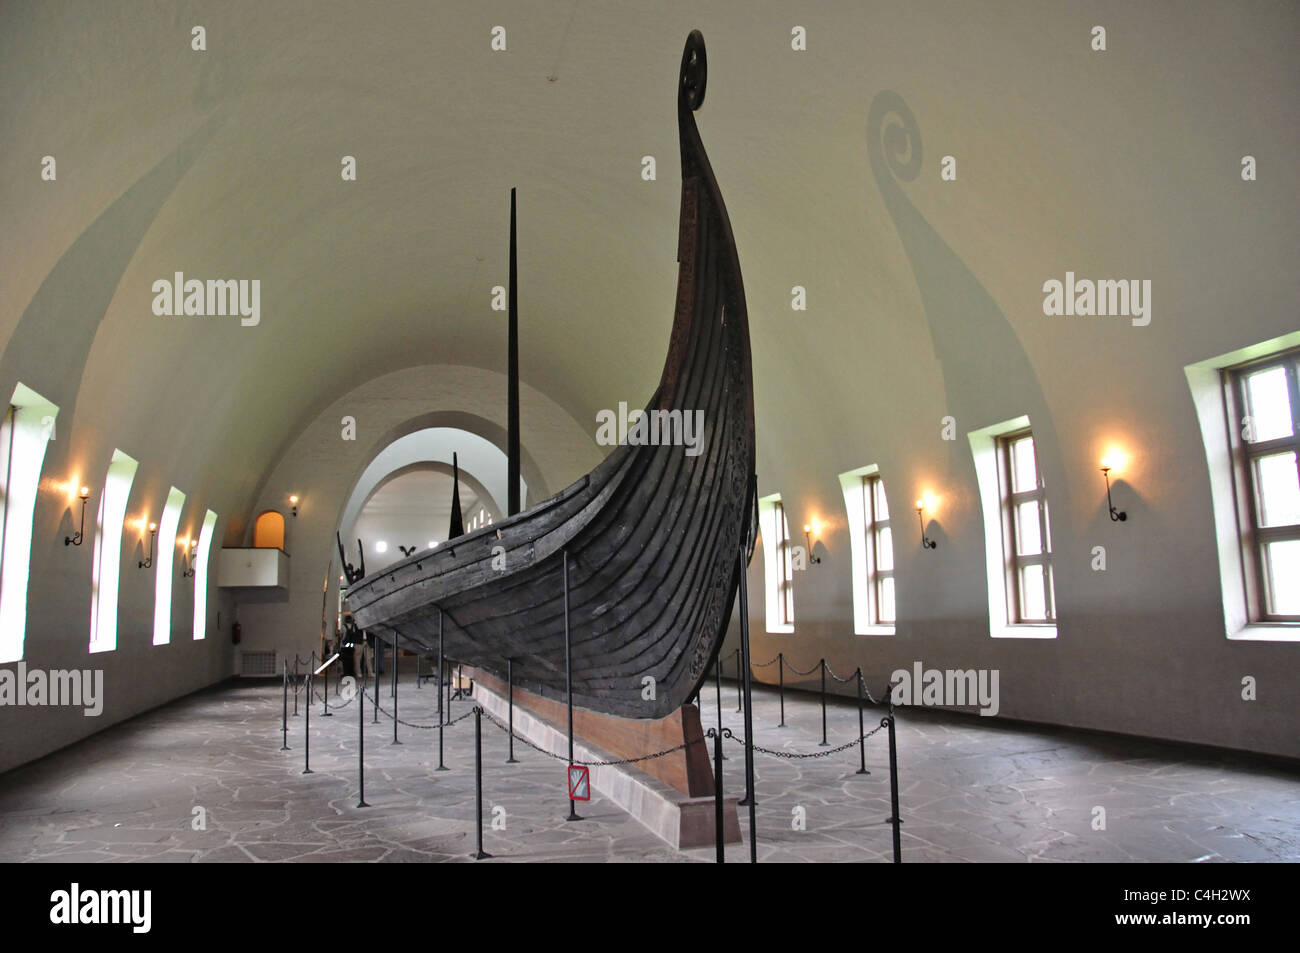 Le 'navire' Oseberg, Viking Ship Museum, Bygdøynesveien, Péninsule de Bygdøy, Oslo, Oslo, comté d'Østlandet, Norvège Région Banque D'Images